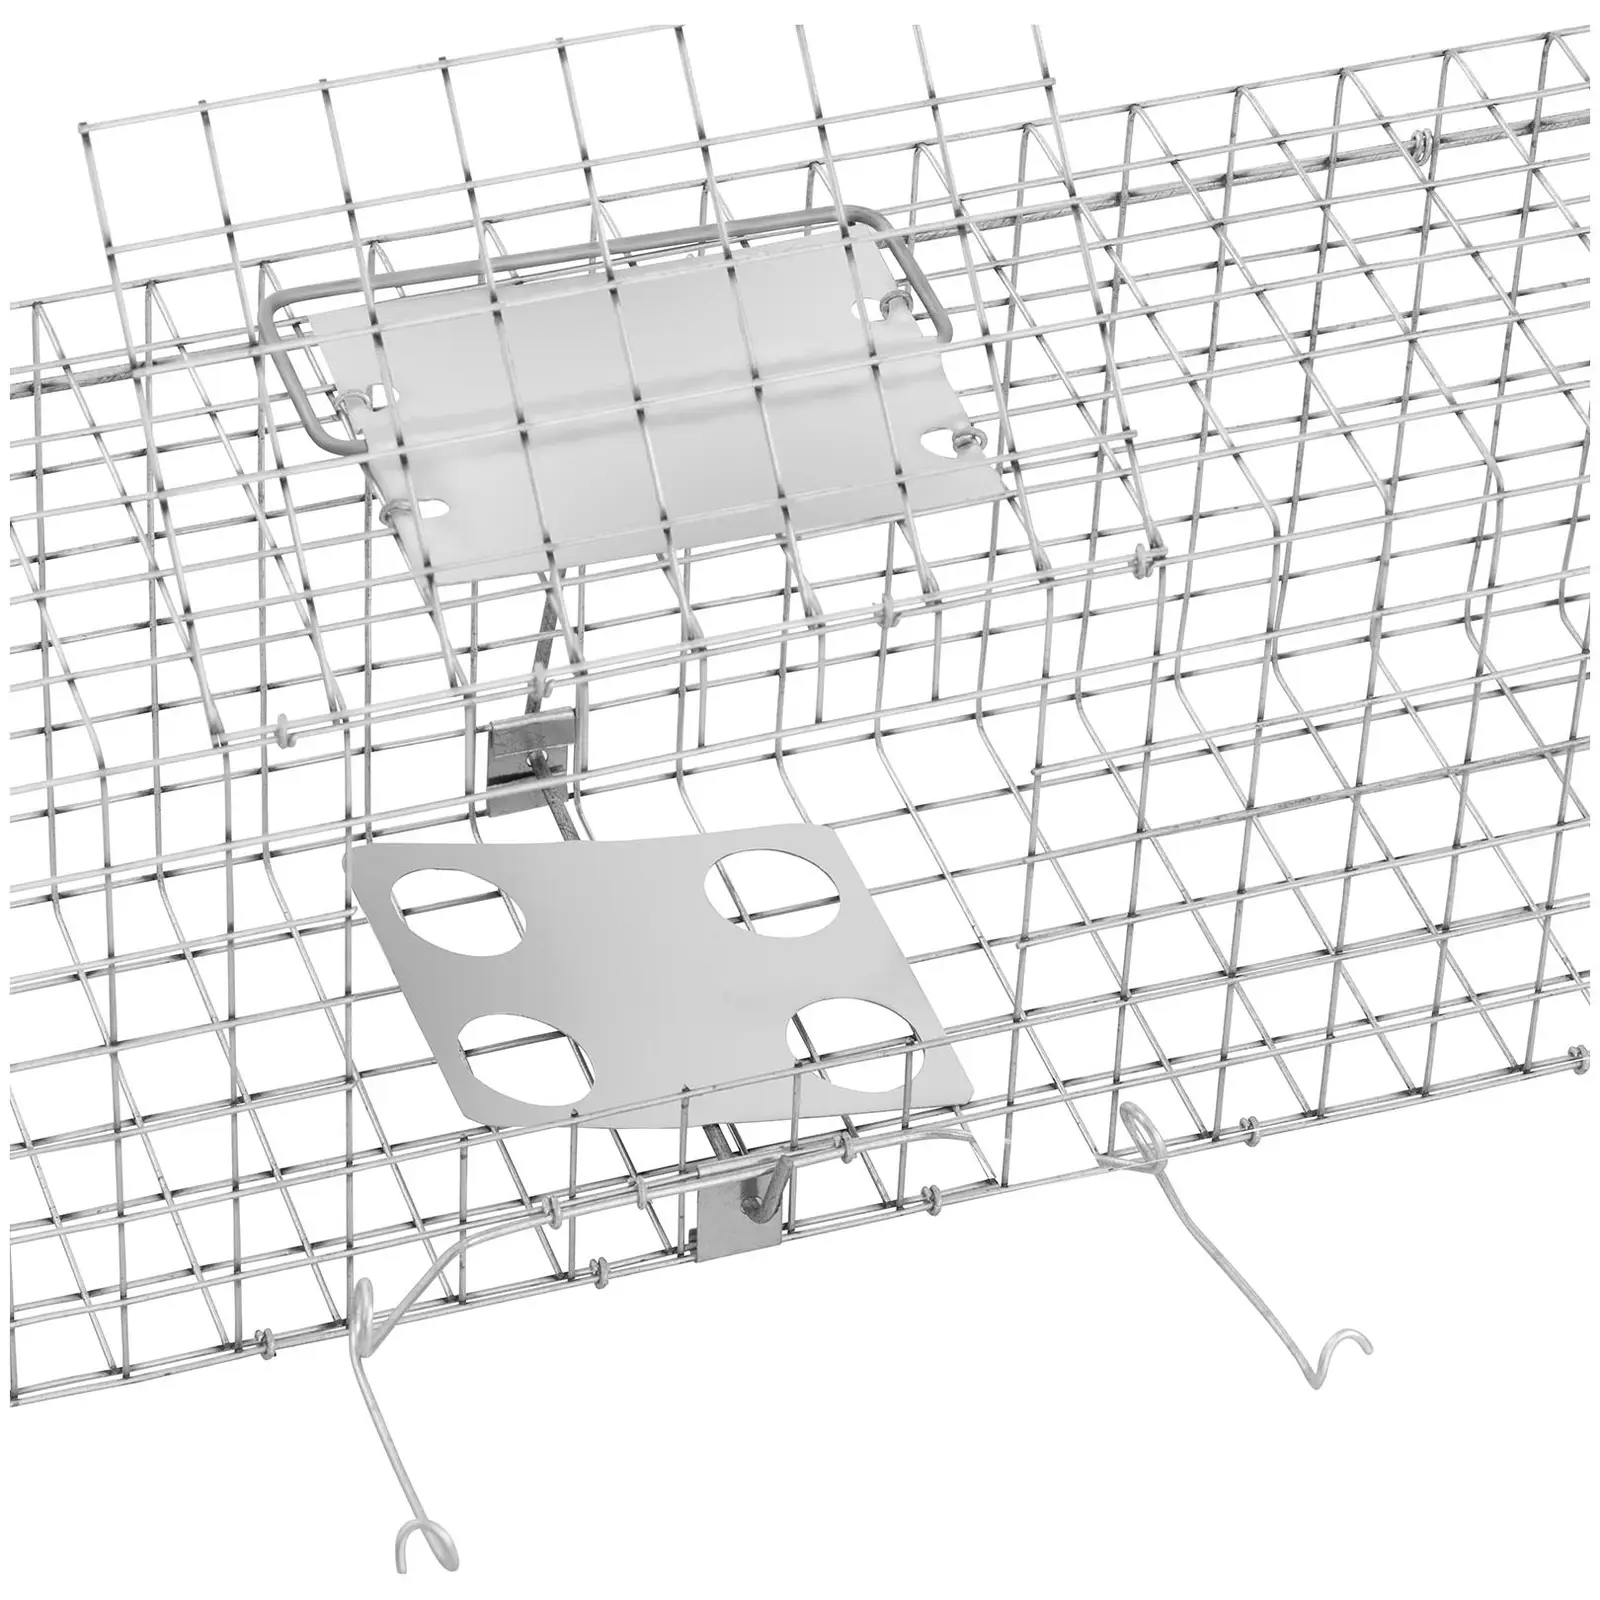 Trappola per animali - 101.5 x 15.5 x 19.5 cm - Dimensioni delle maglie: 25 x 25 mm